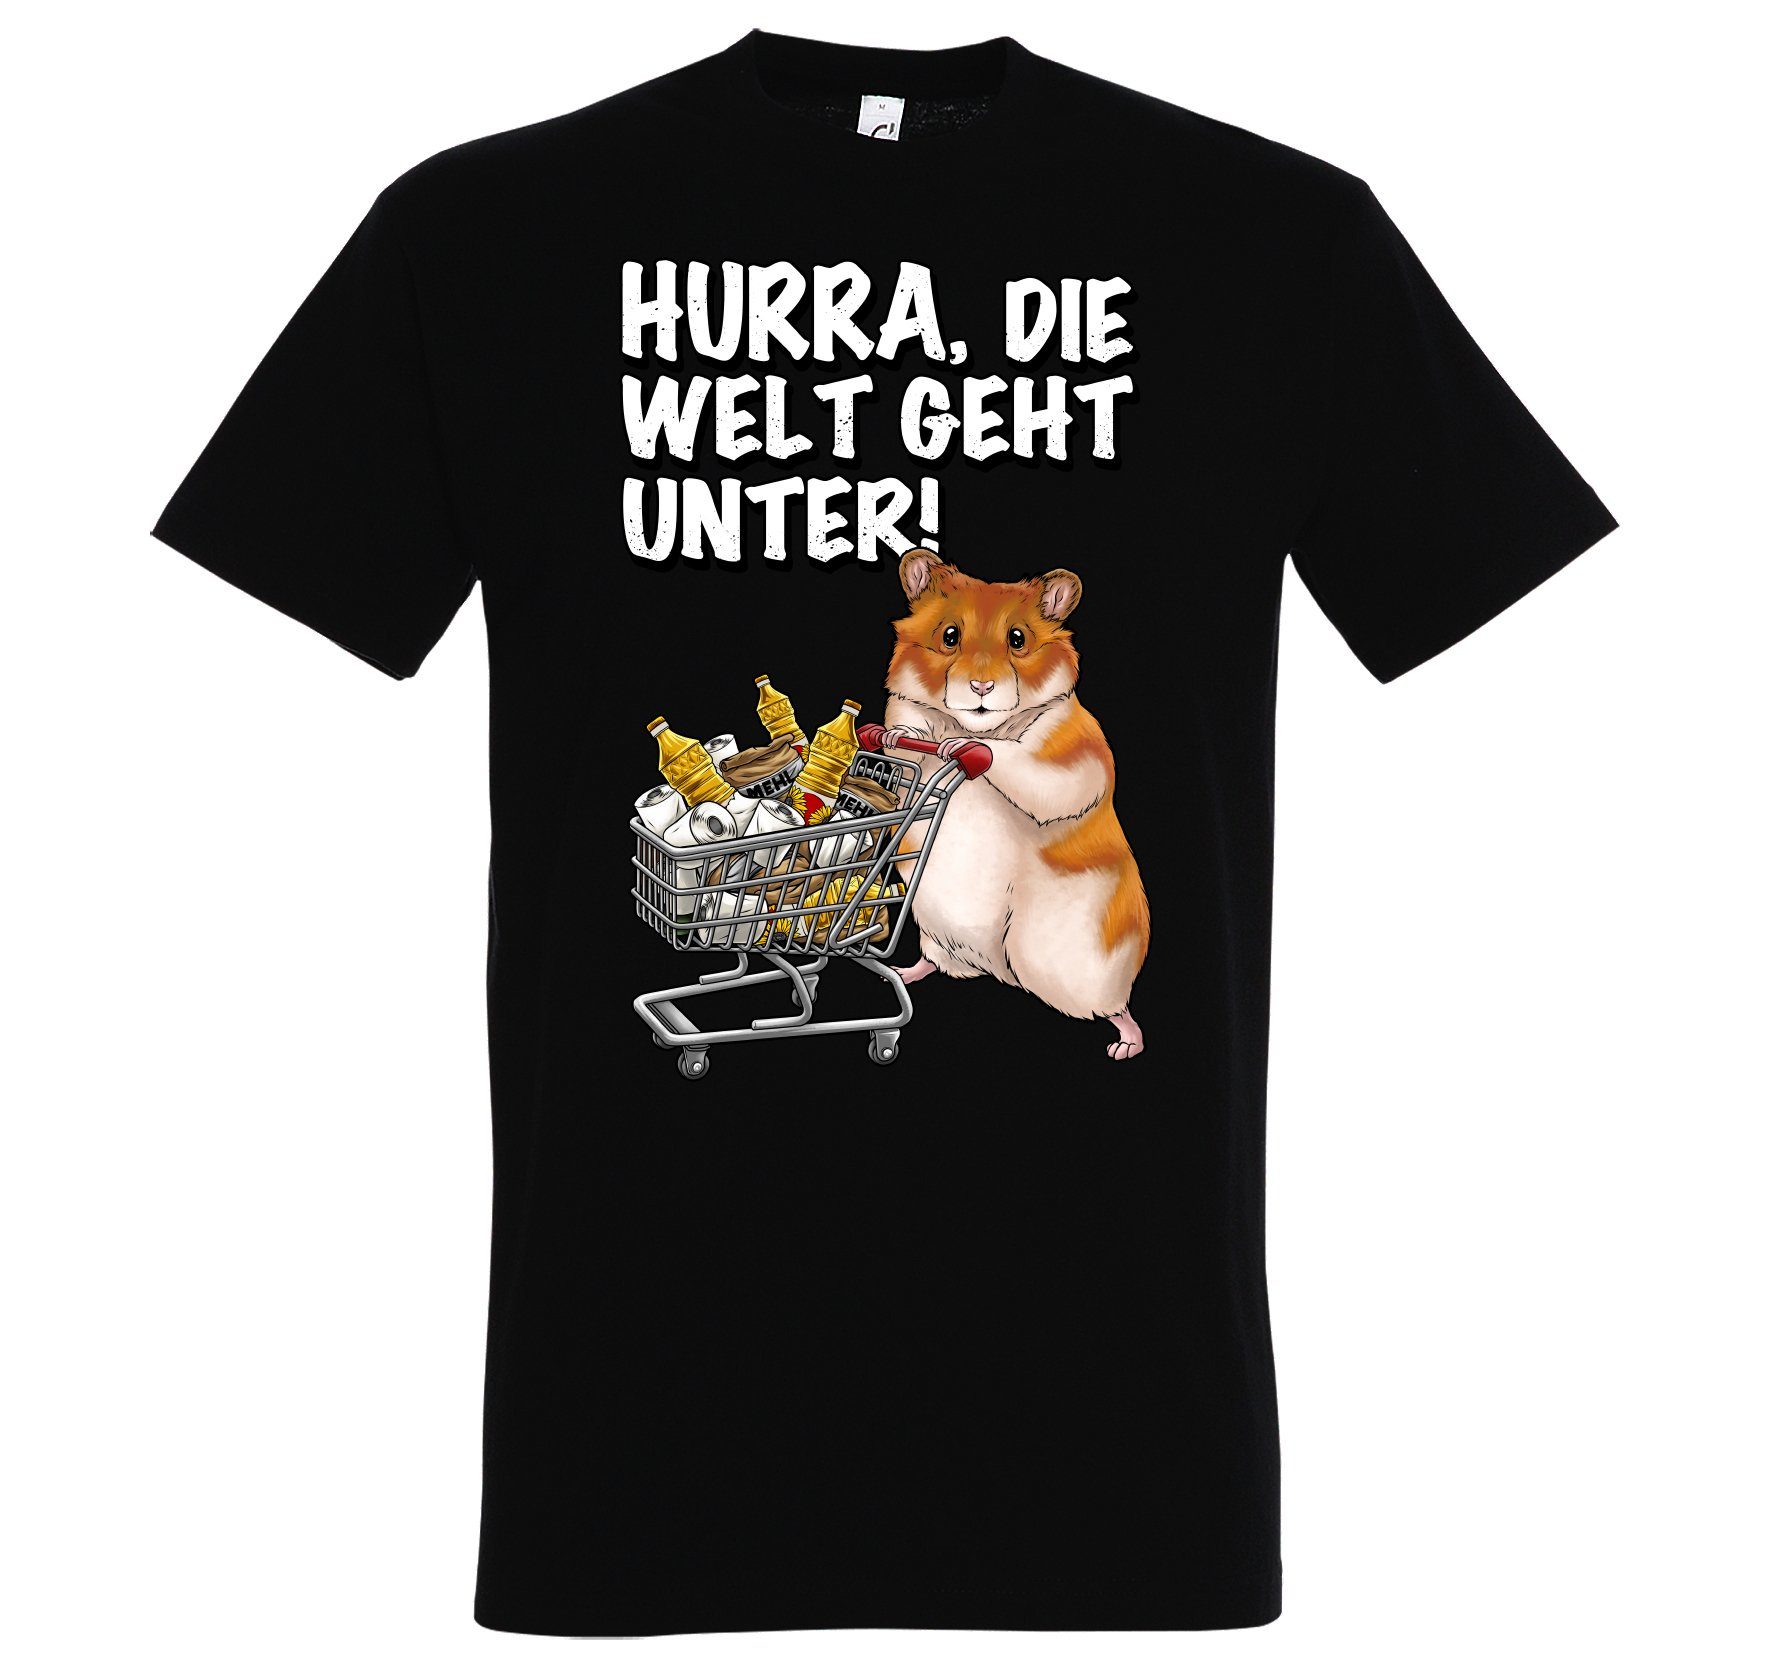 T-Shirt Designz Hurra Schwarz Youth Spruch mit Hamster Geht Herren Print-Shirt lustigem Print Unter Die Welt